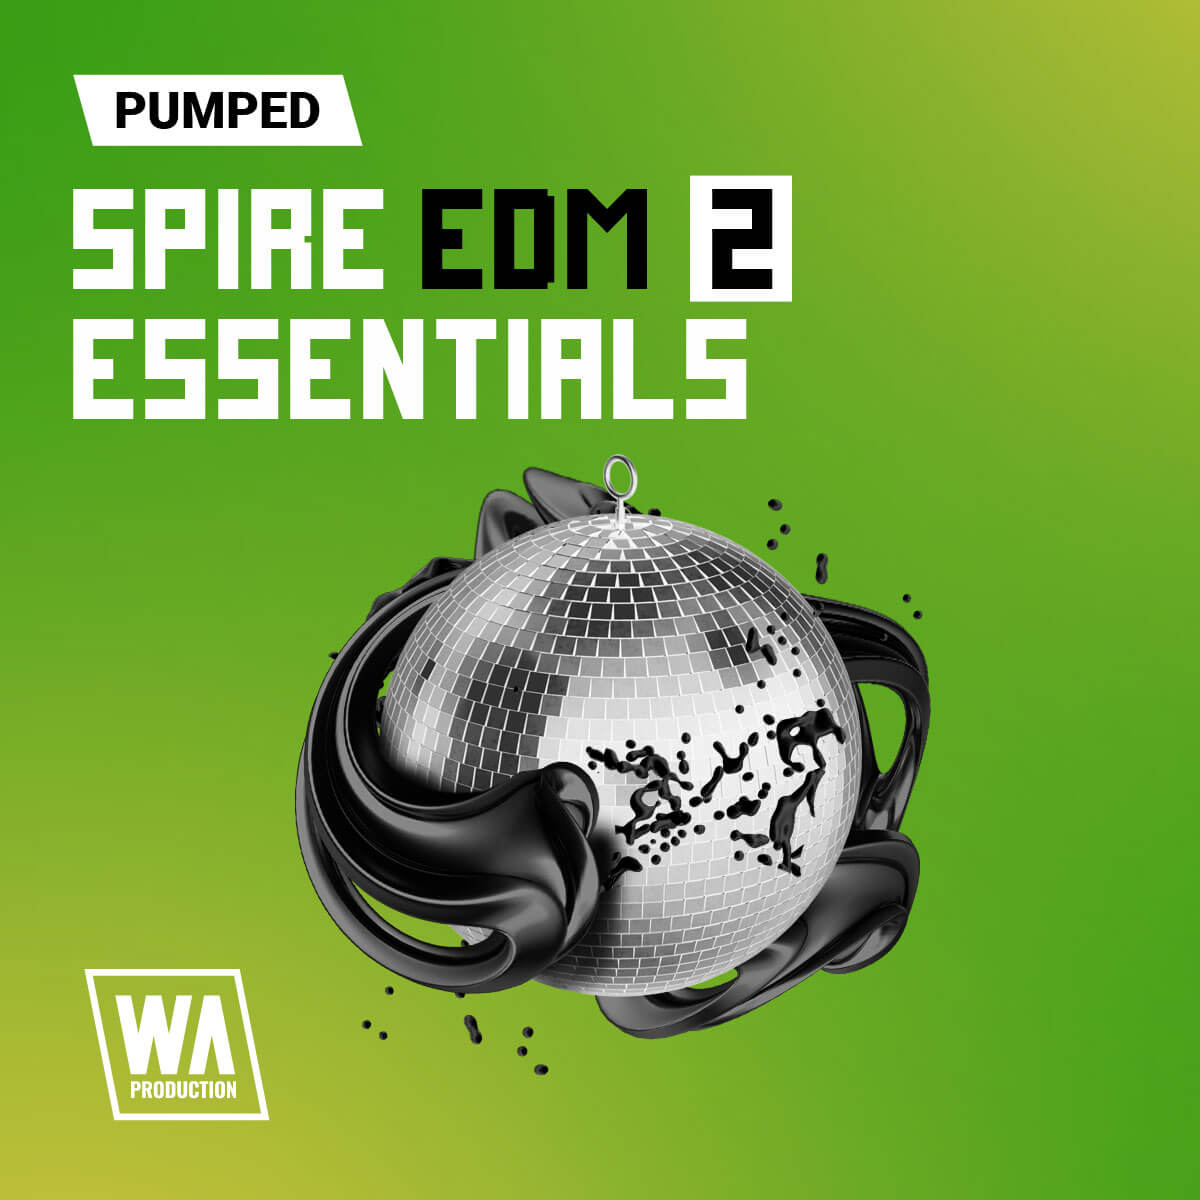 دانلود مجموعه پریست وی اس تی اسپایر WA Production Pumped Spire EDM Essentials 2